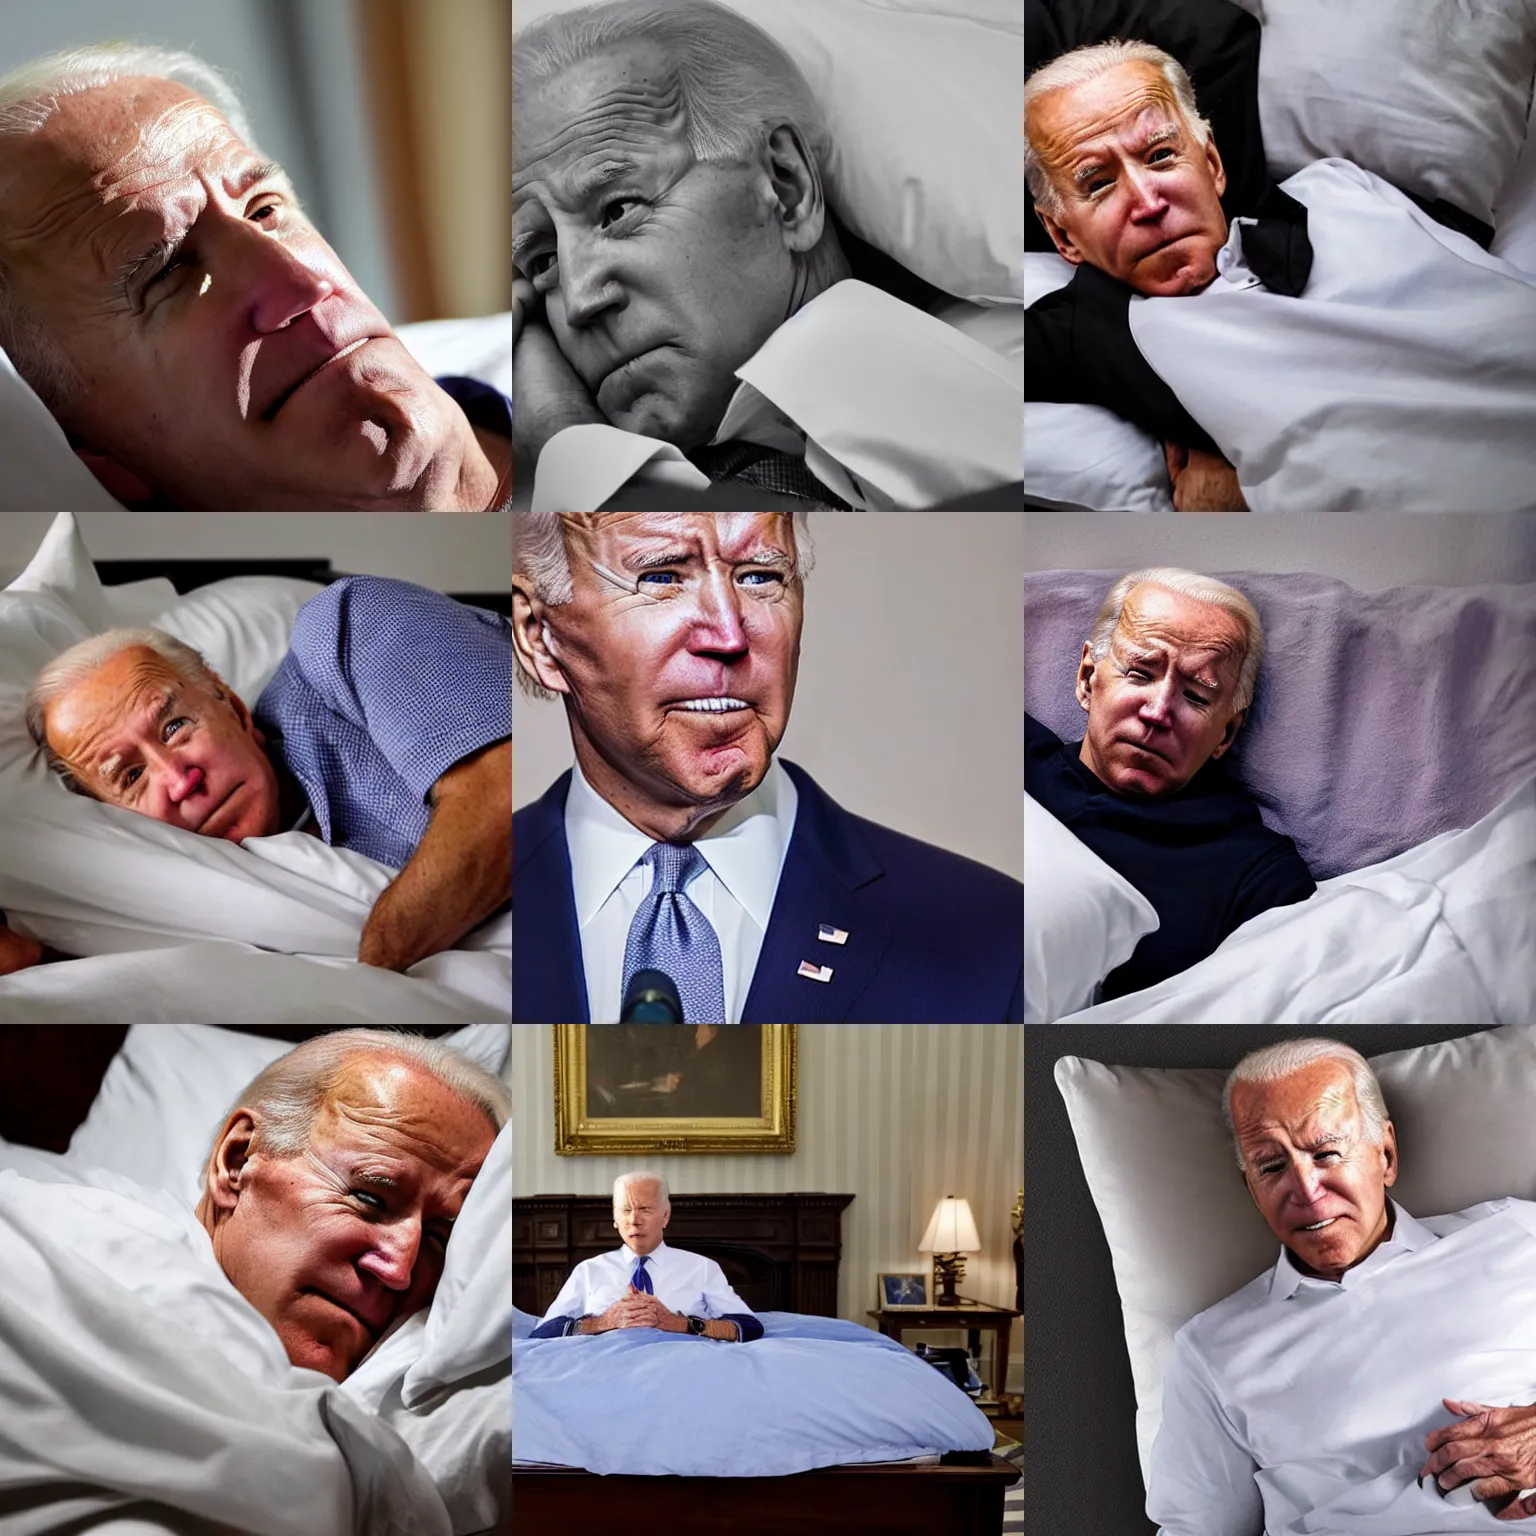 Prompt: photo of exhausted joe biden in bed